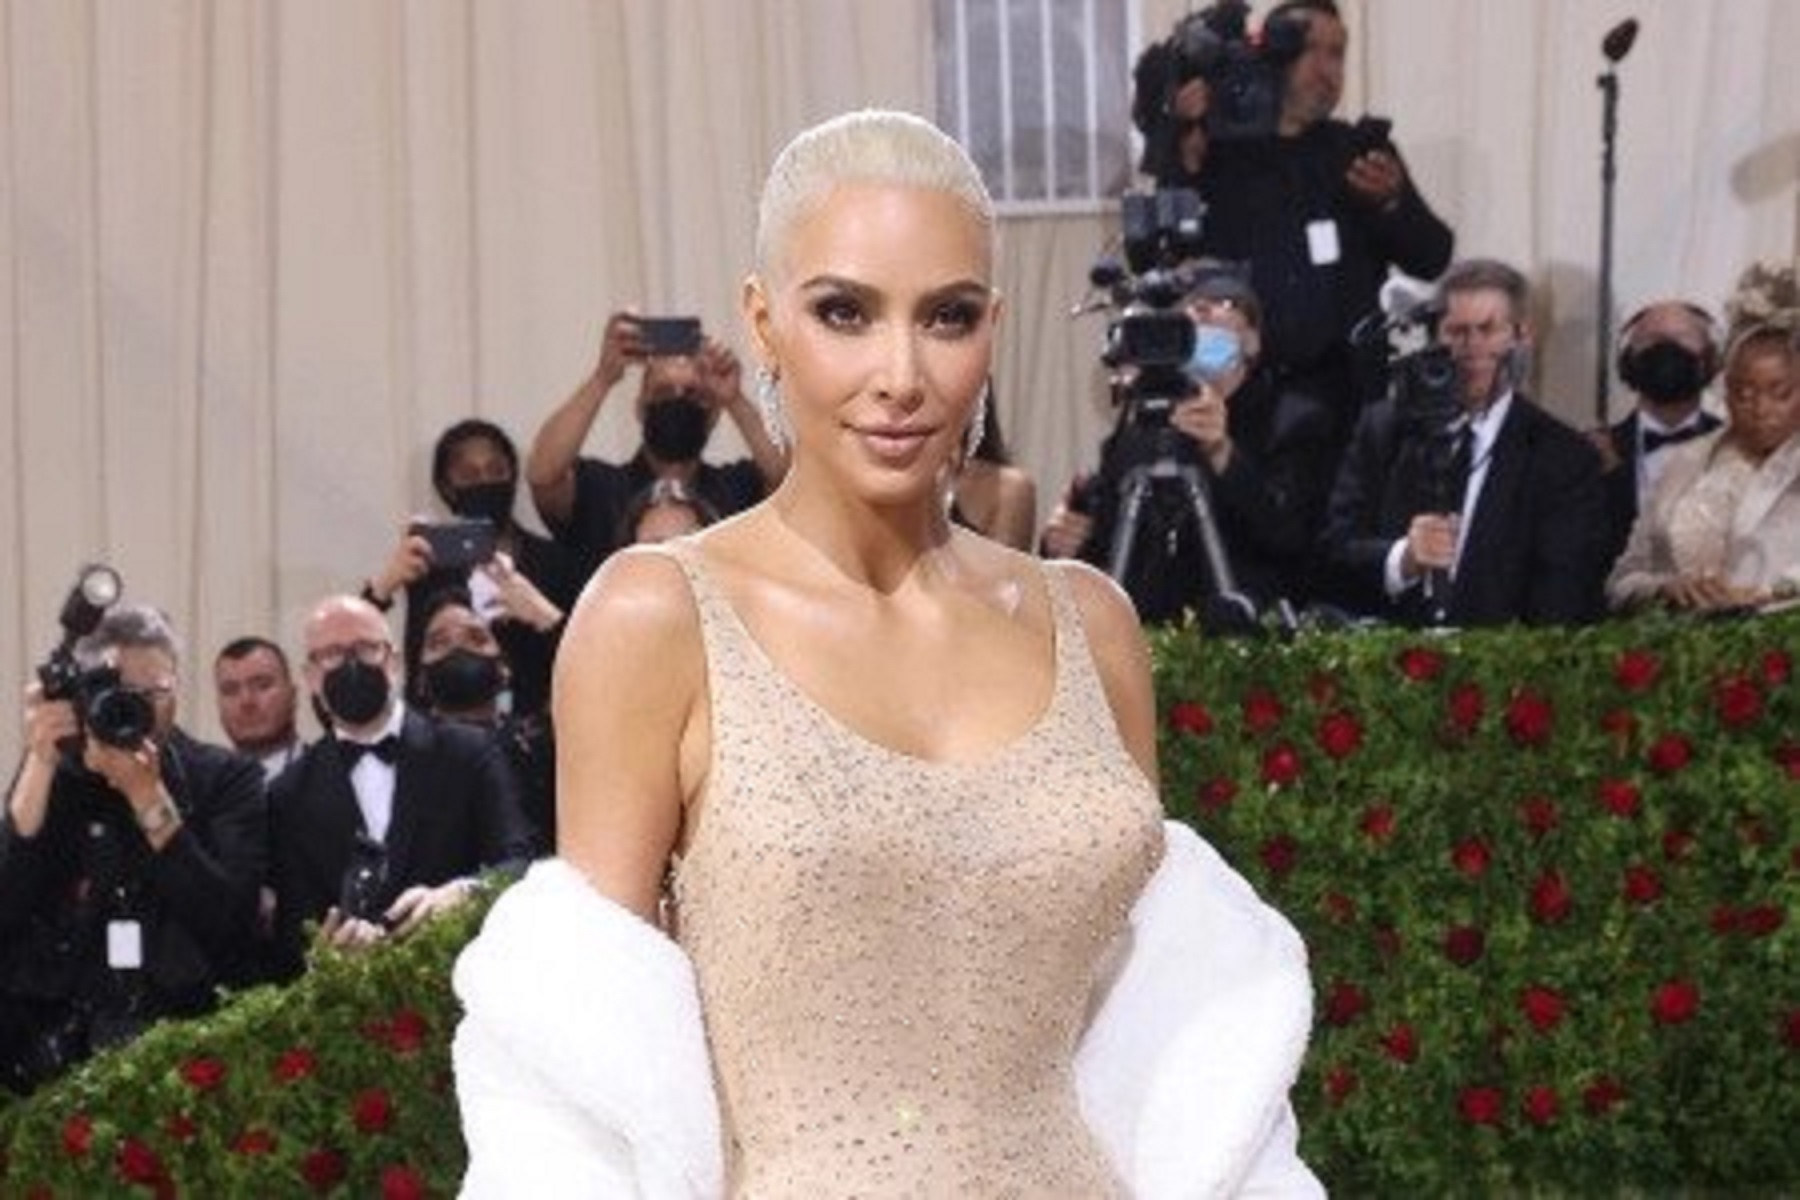 Kardashian accused of ‘irreparably damaging’ Monroe’s gown